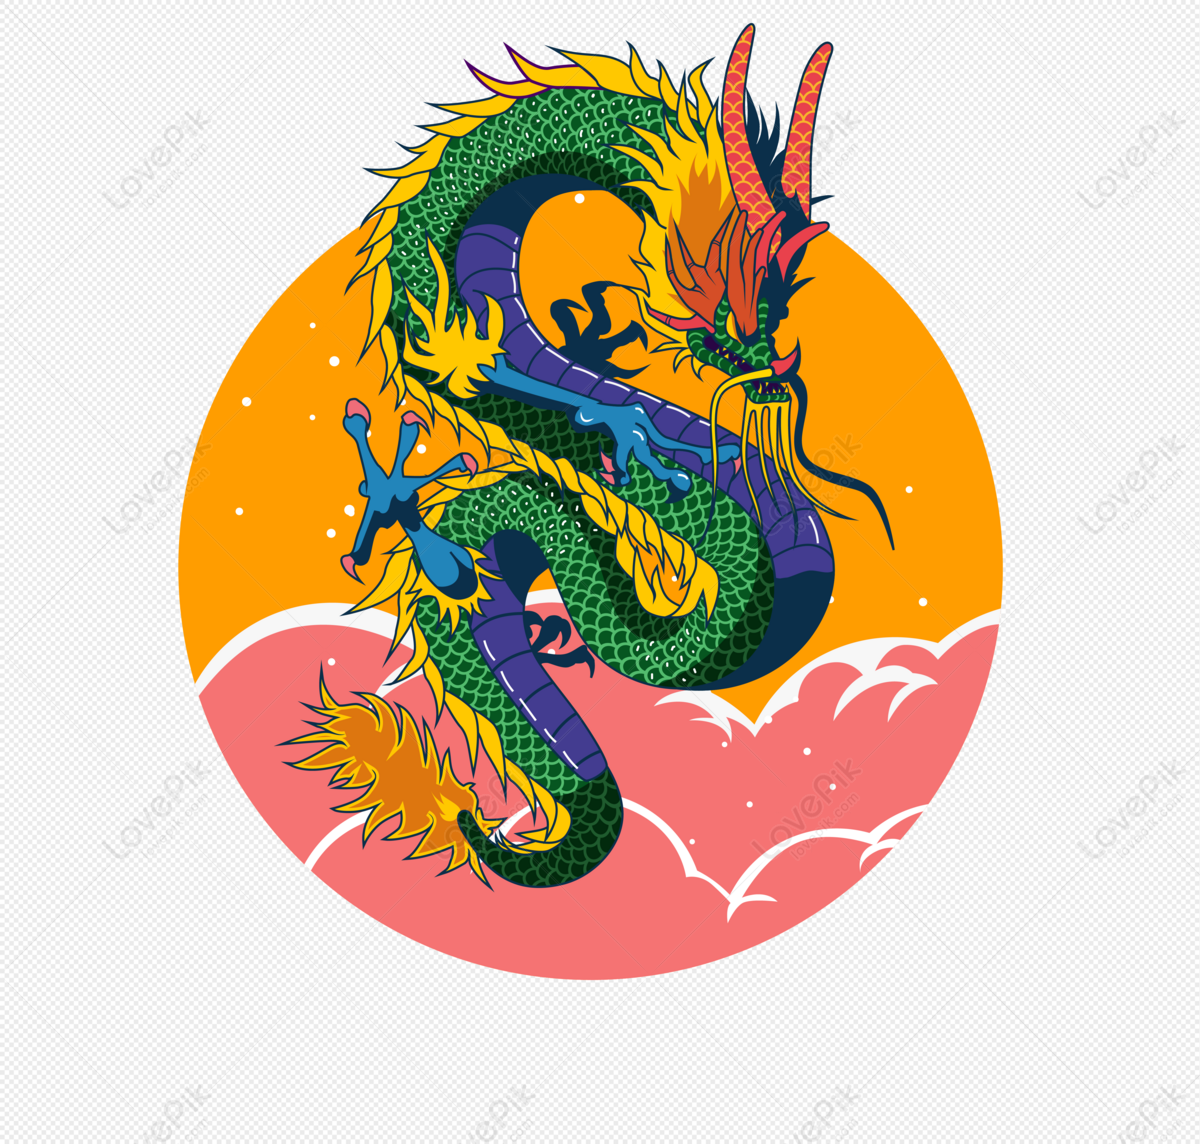 Vẽ tay rồng Trung Quốc: Vẽ tay rồng Trung Quốc là một nghệ thuật độc đáo và sang trọng. Những cách vẽ độc đáo, những màu sắc rực rỡ đan xen tạo nên những hình ảnh tuyệt đẹp về rồng. Hãy cùng chiêm ngưỡng những hình ảnh này để tìm hiểu thêm về nghệ thuật vẽ tay rồng Trung Quốc đầy sáng tạo.